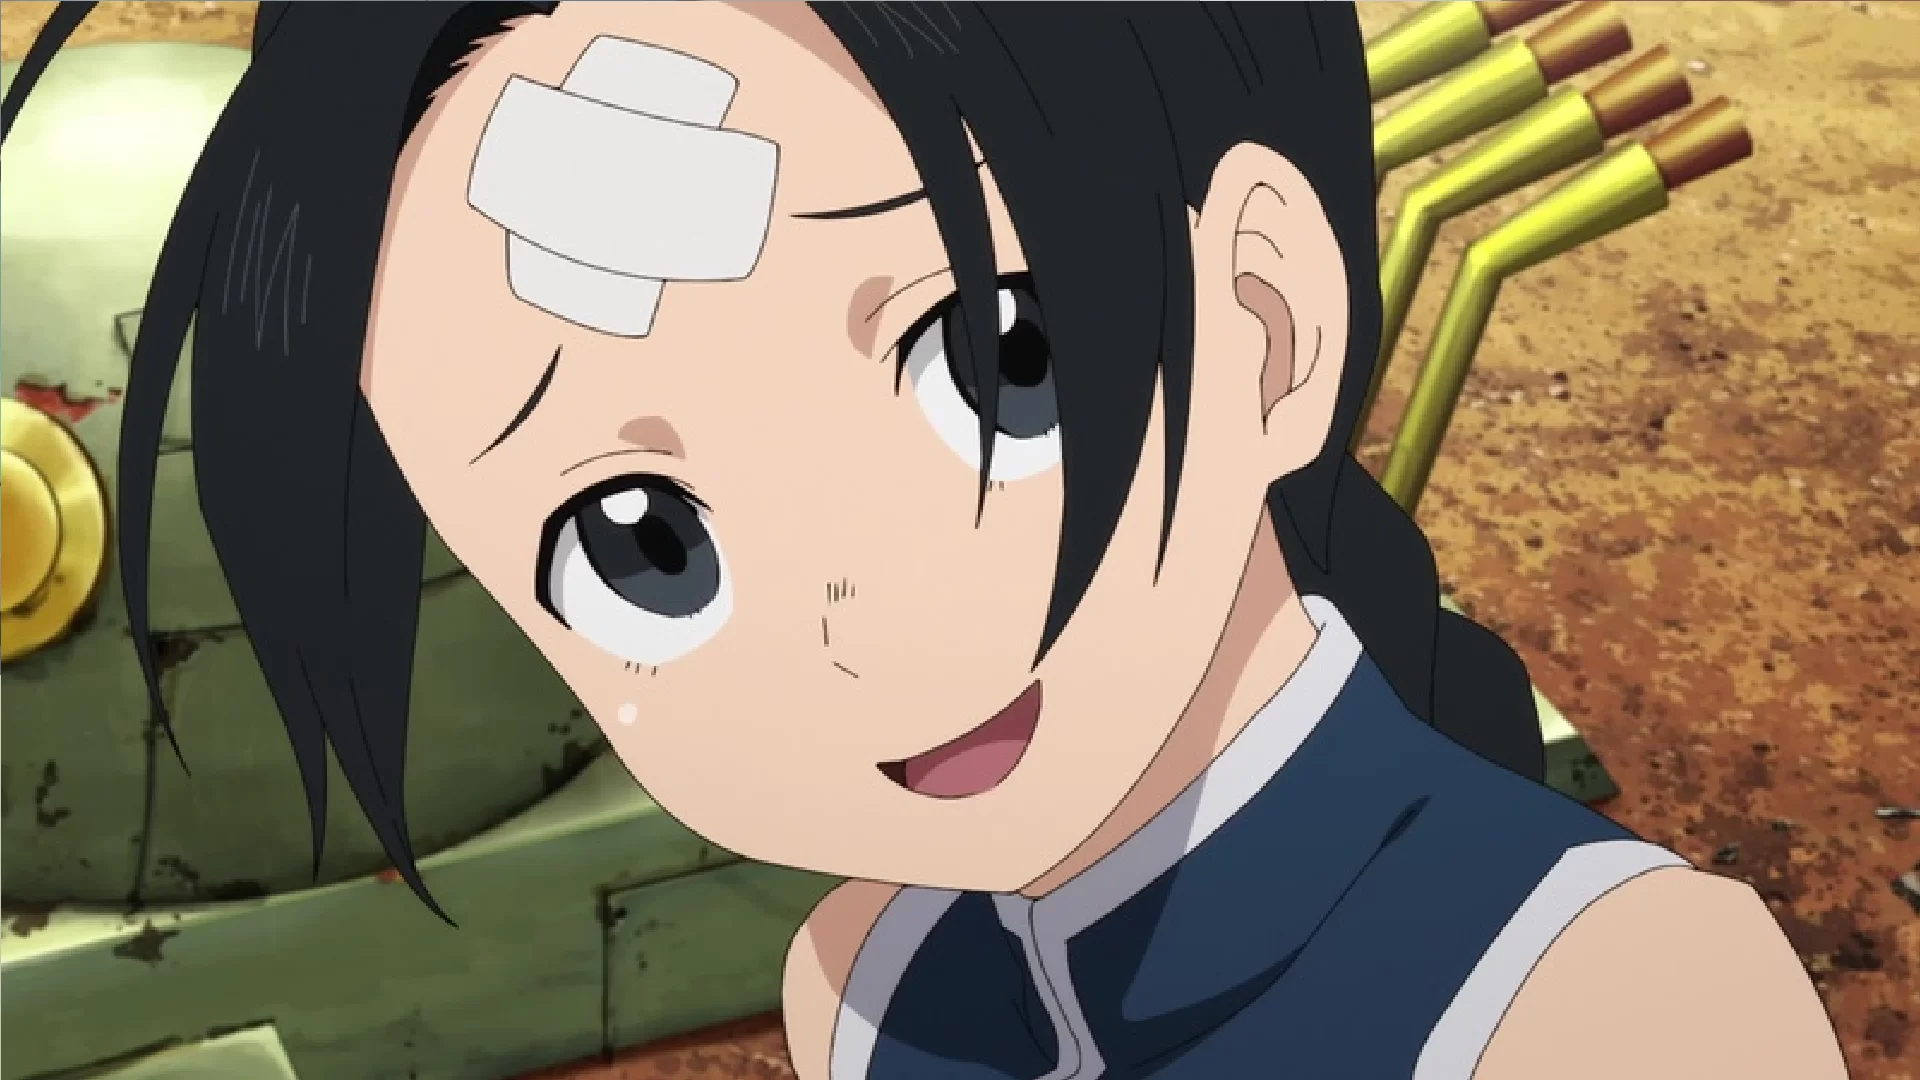 Minaturka 15 odcinka anime Enen no Shouboutai